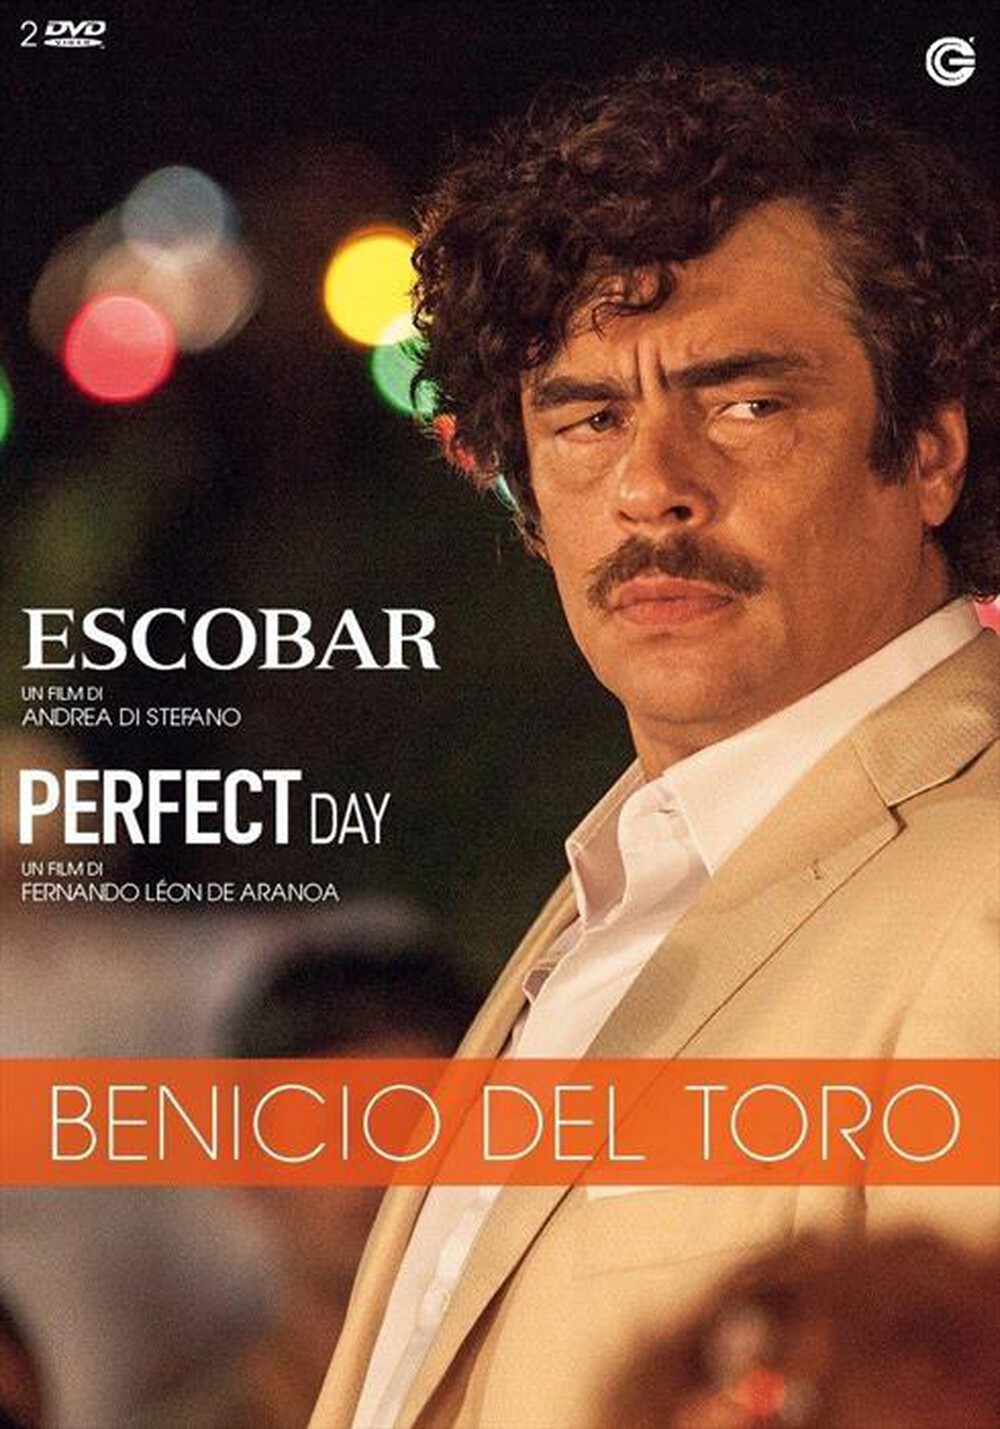 "CECCHI GORI - Benicio Del Toro Collection (2 Dvd)"